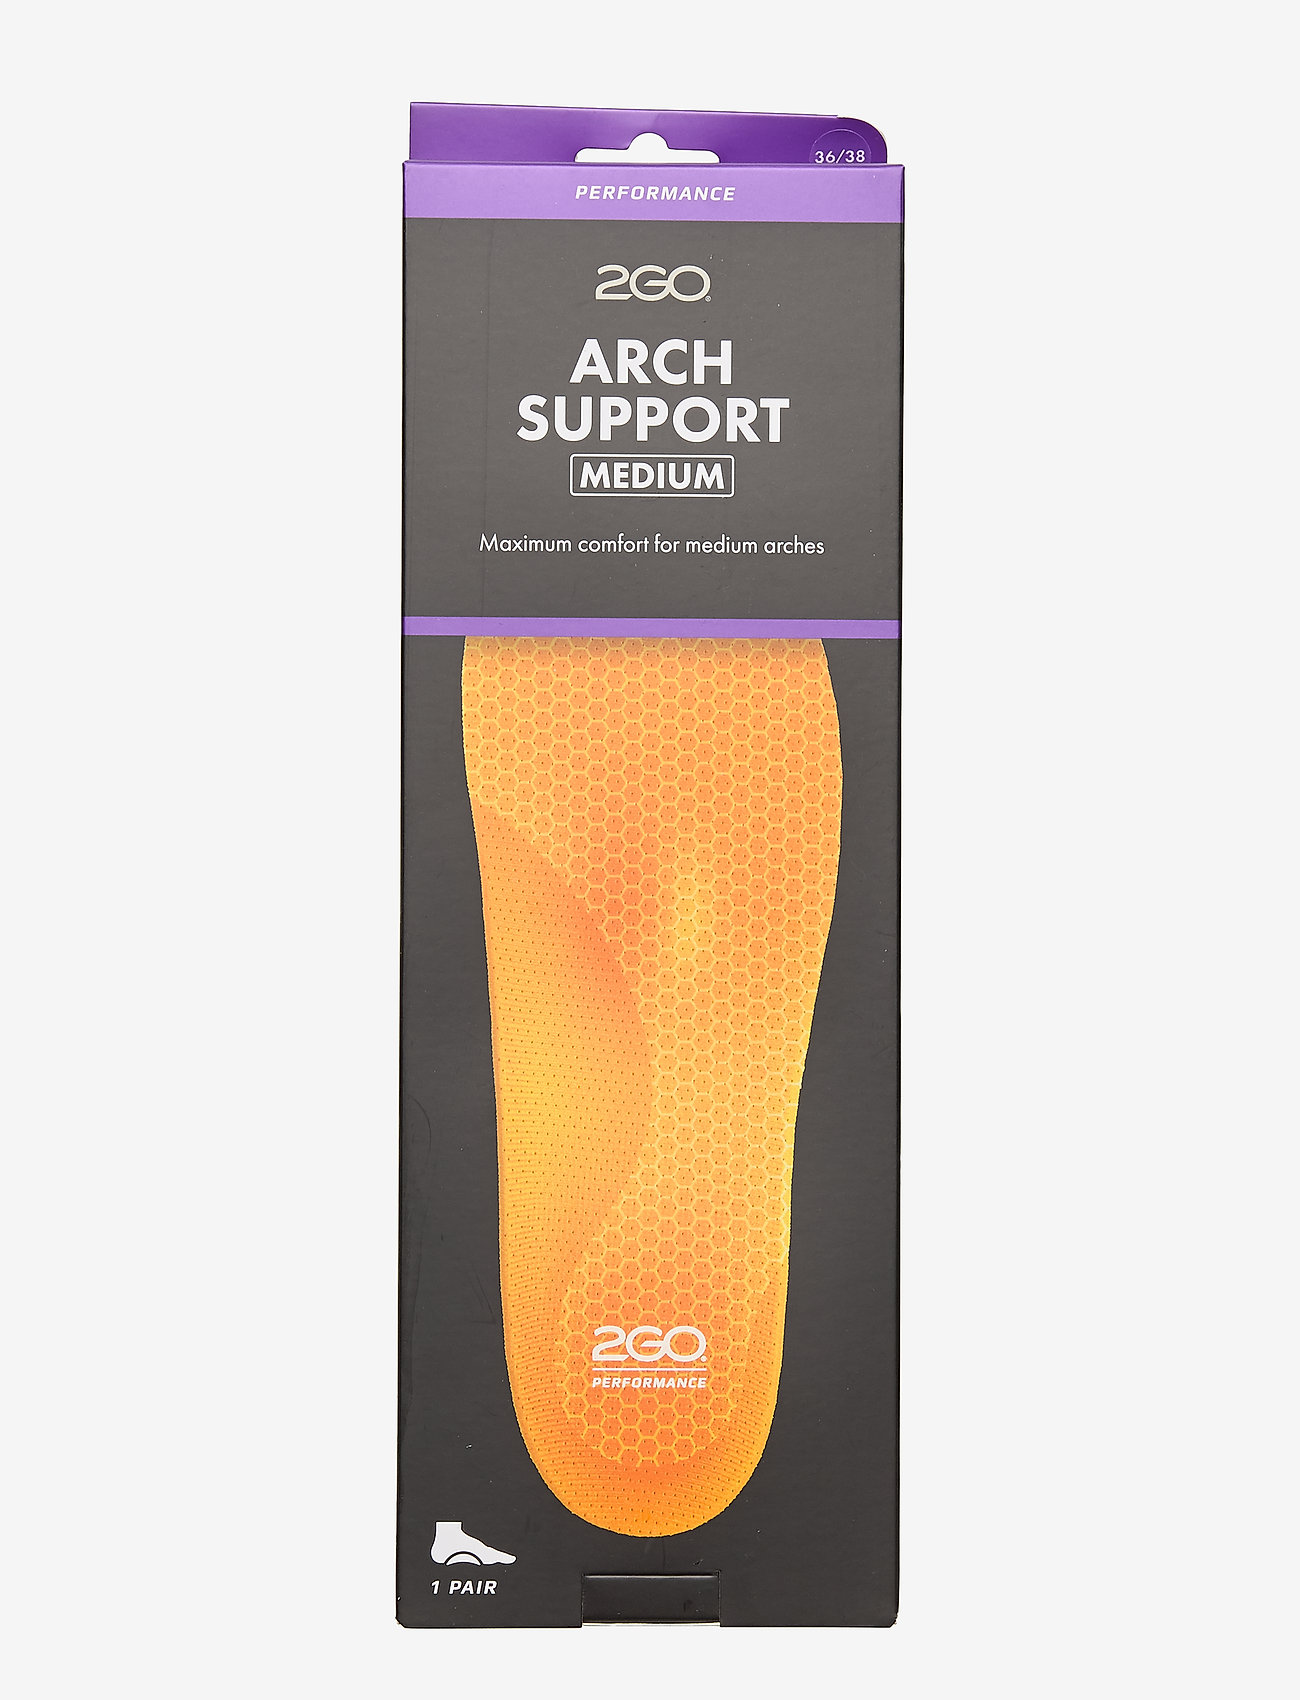 2GO - 2GO Arch Support Medium - lowest prices - orange - 0